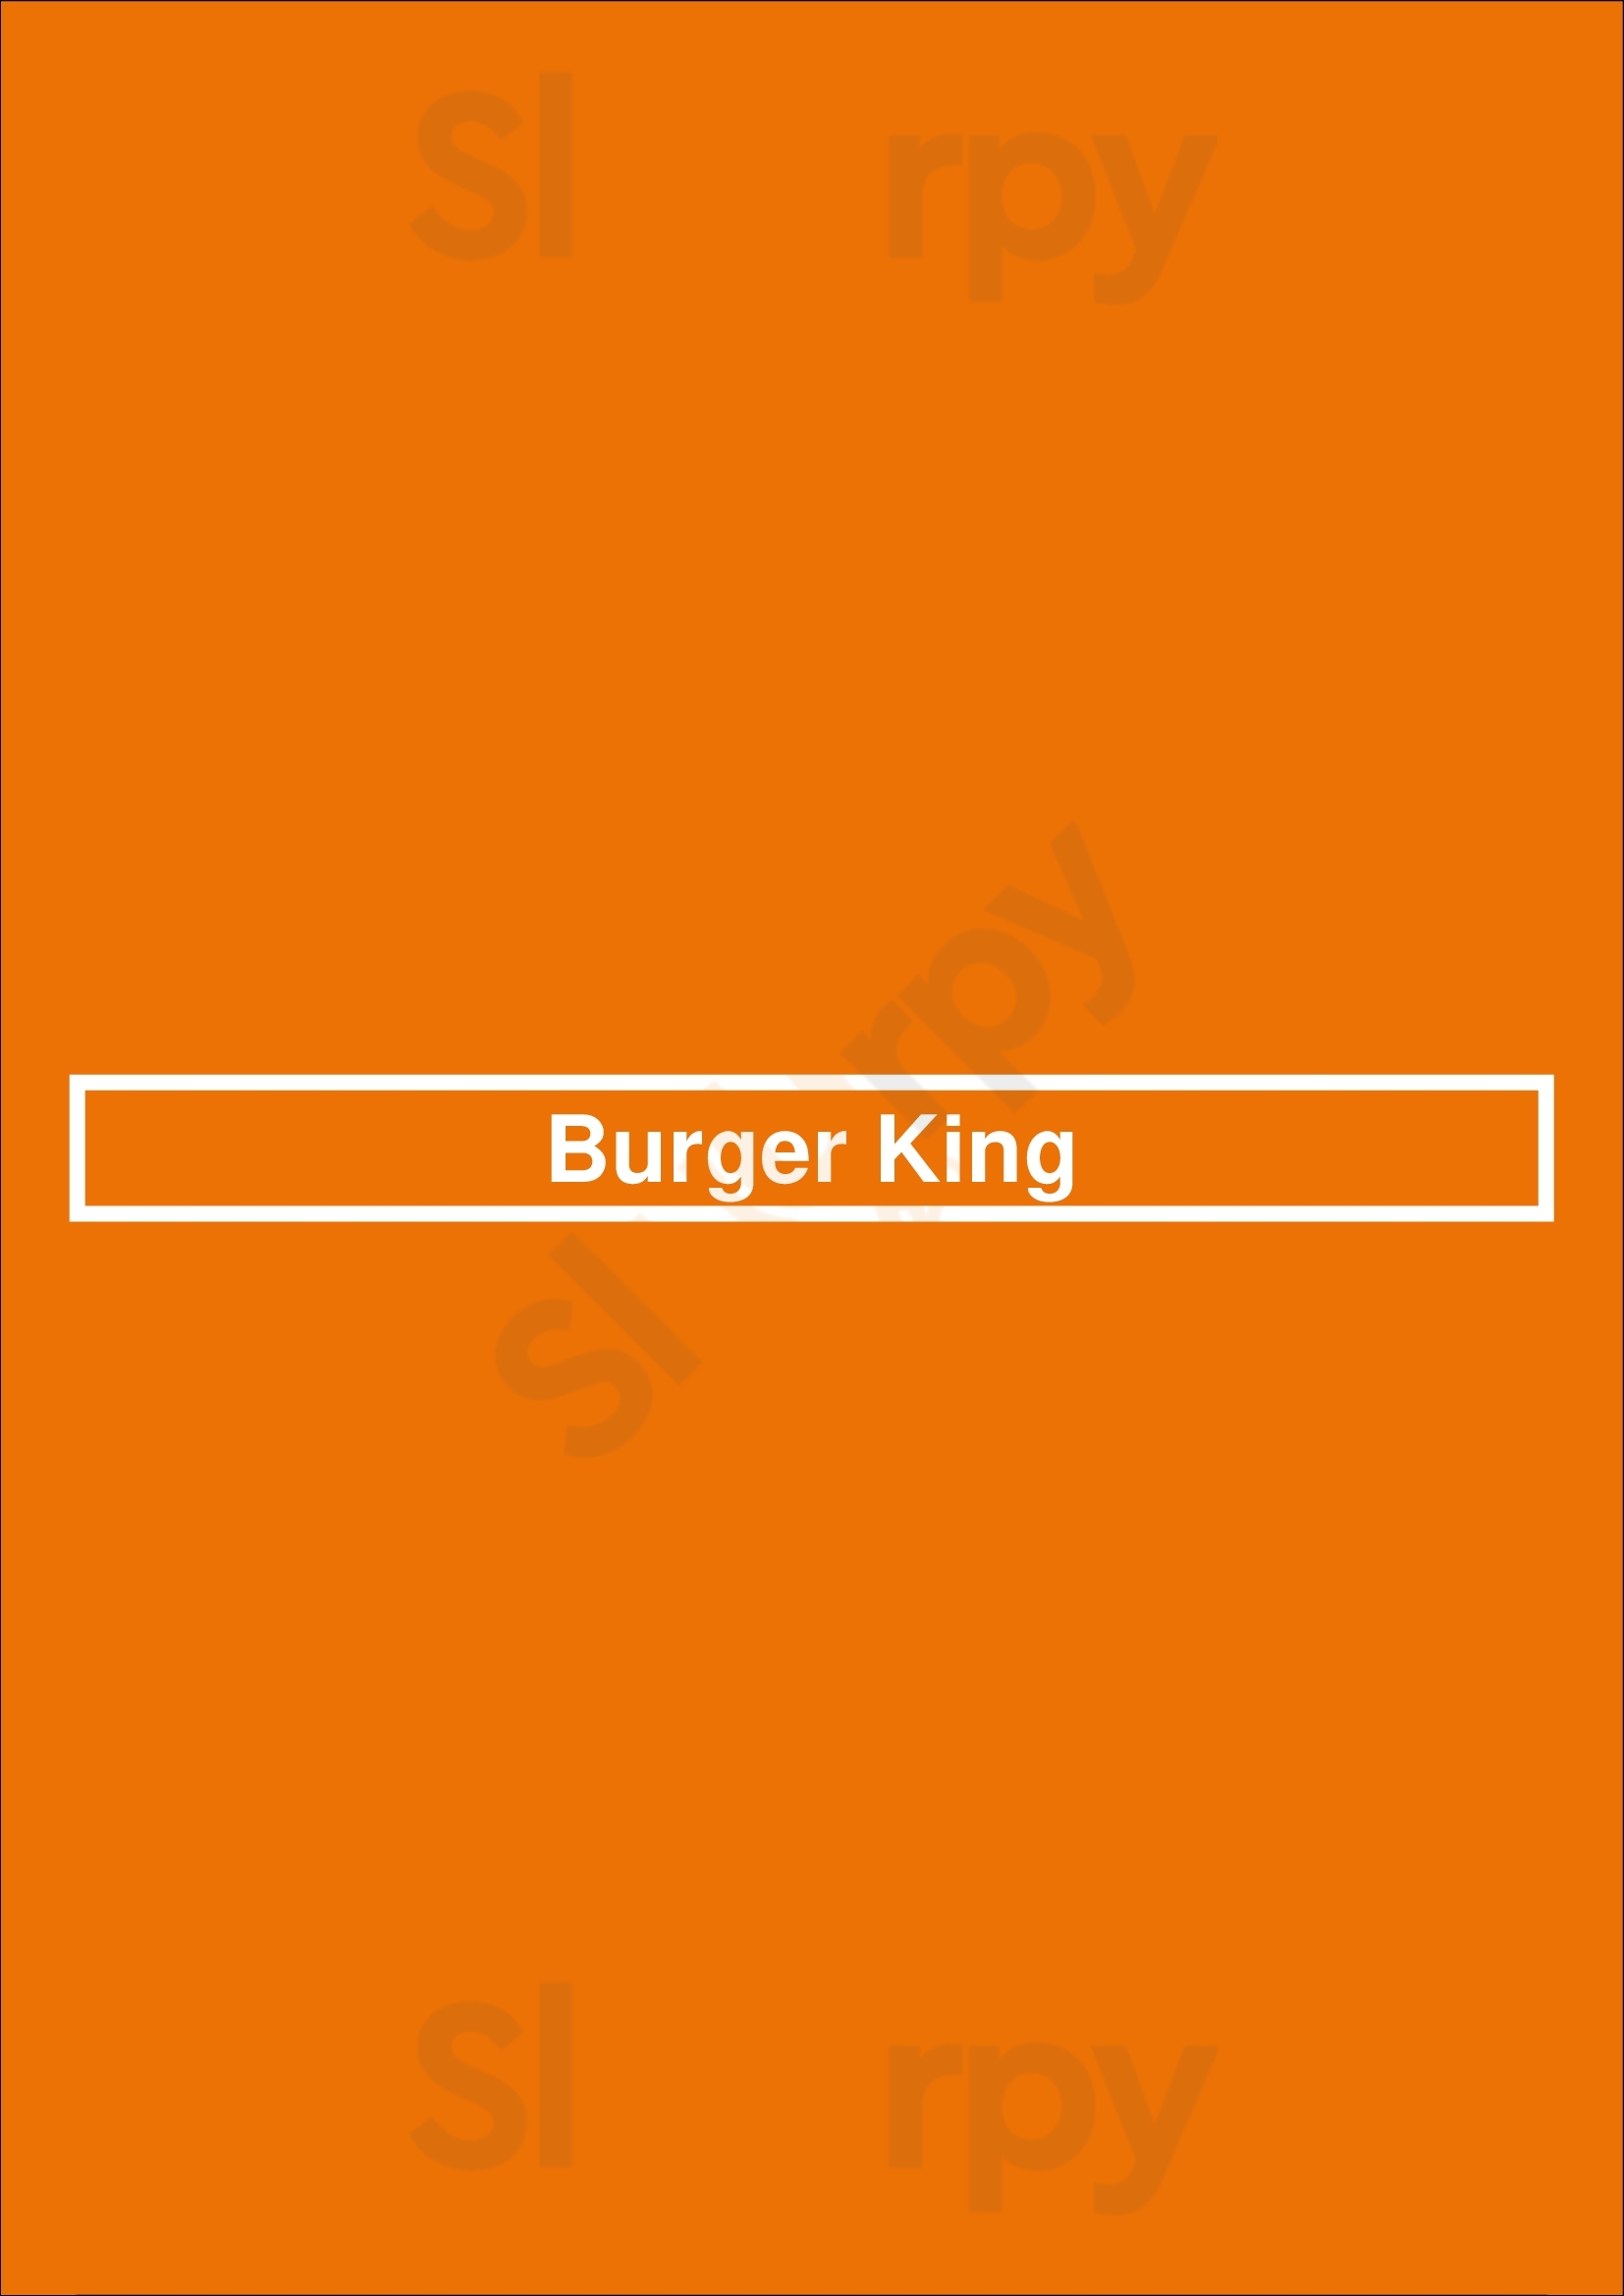 Burger King Rochester Menu - 1